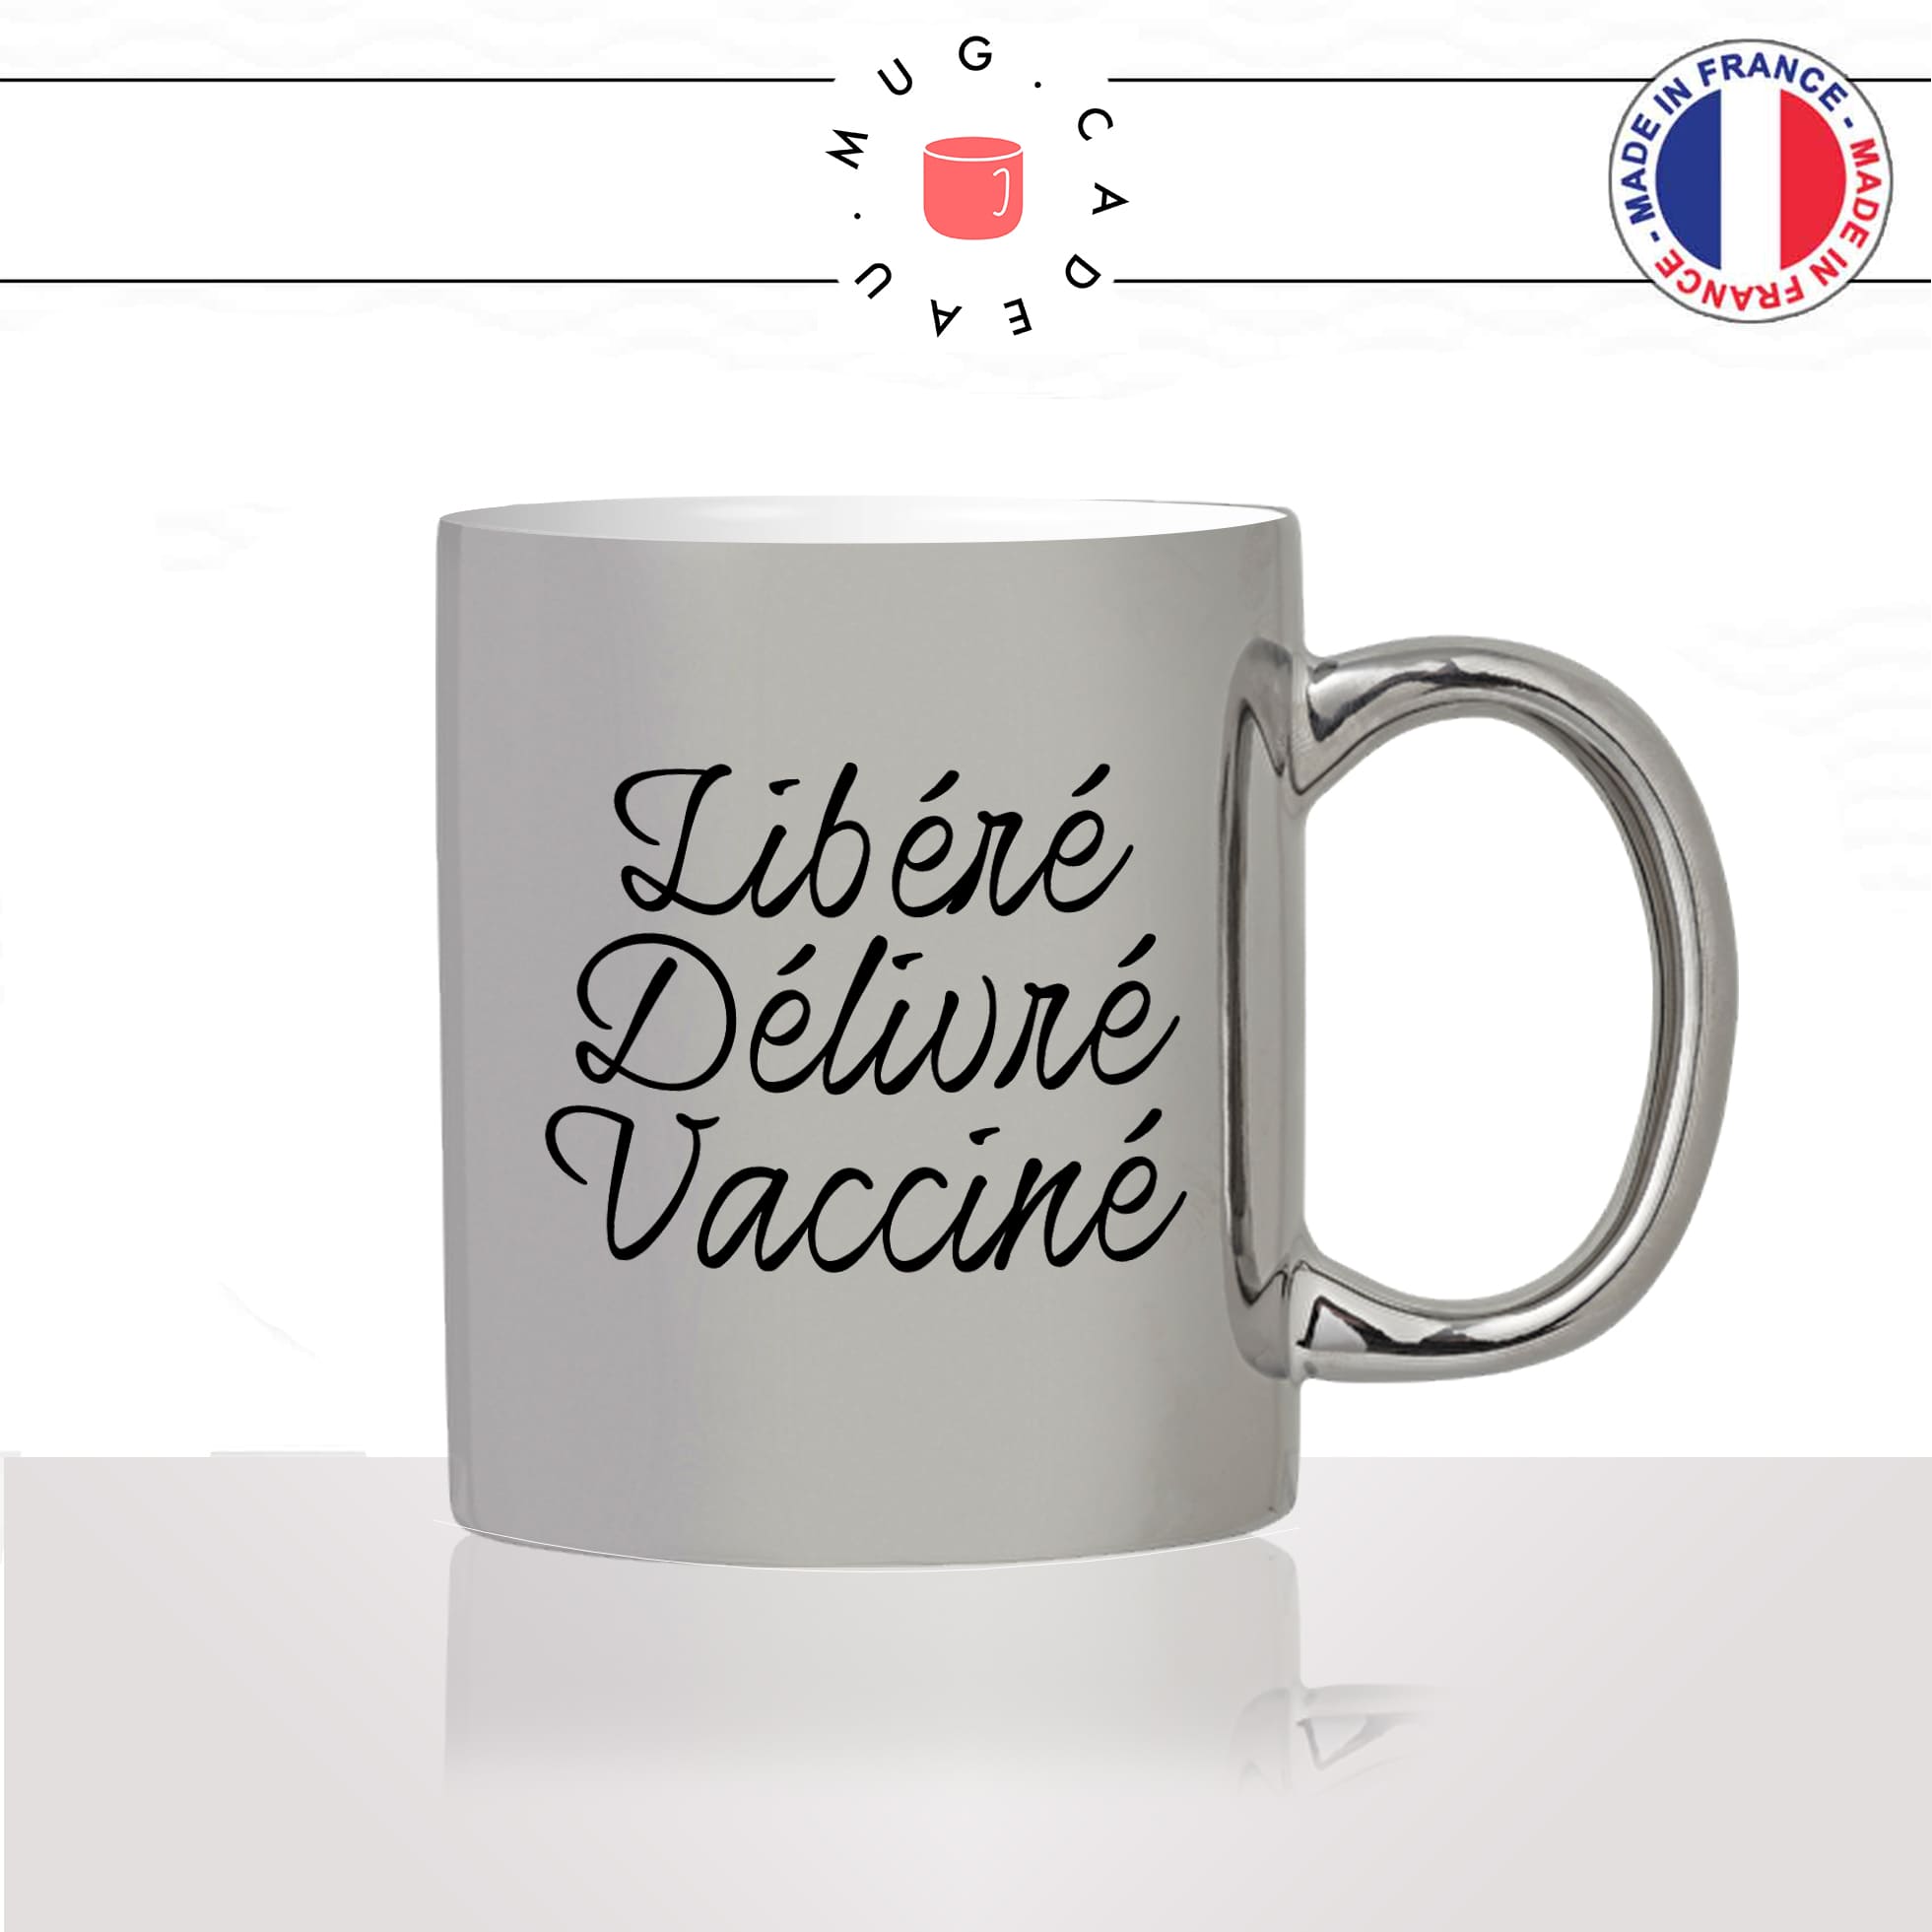 mug-tasse-argenté-argent-gris-silver-libéré-délivré-vacciné-vaccination-covid-homme-femme-parodie-humour-fun-cool-idée-cadeau-original2